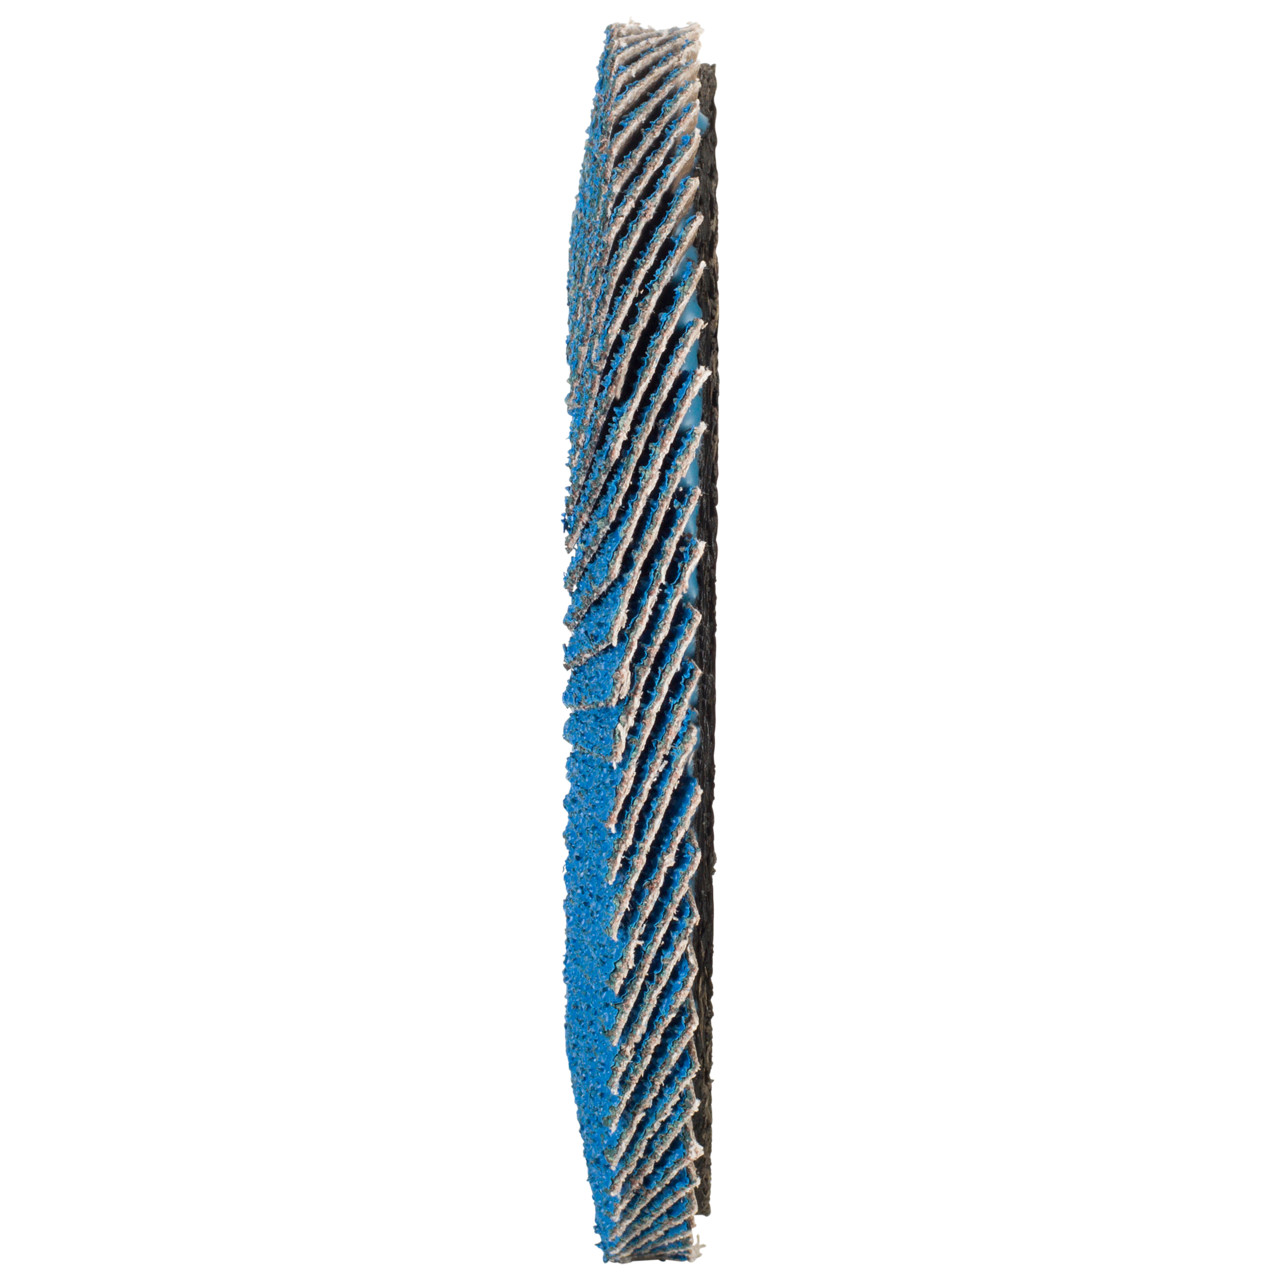 Tyrolit Getande borgring DxH 125x22,2 FASTCUT voor staal &amp; roestvrij staal, P40, vorm: 28N - rechte uitvoering (kunststof draaglichaam), Art. 458034